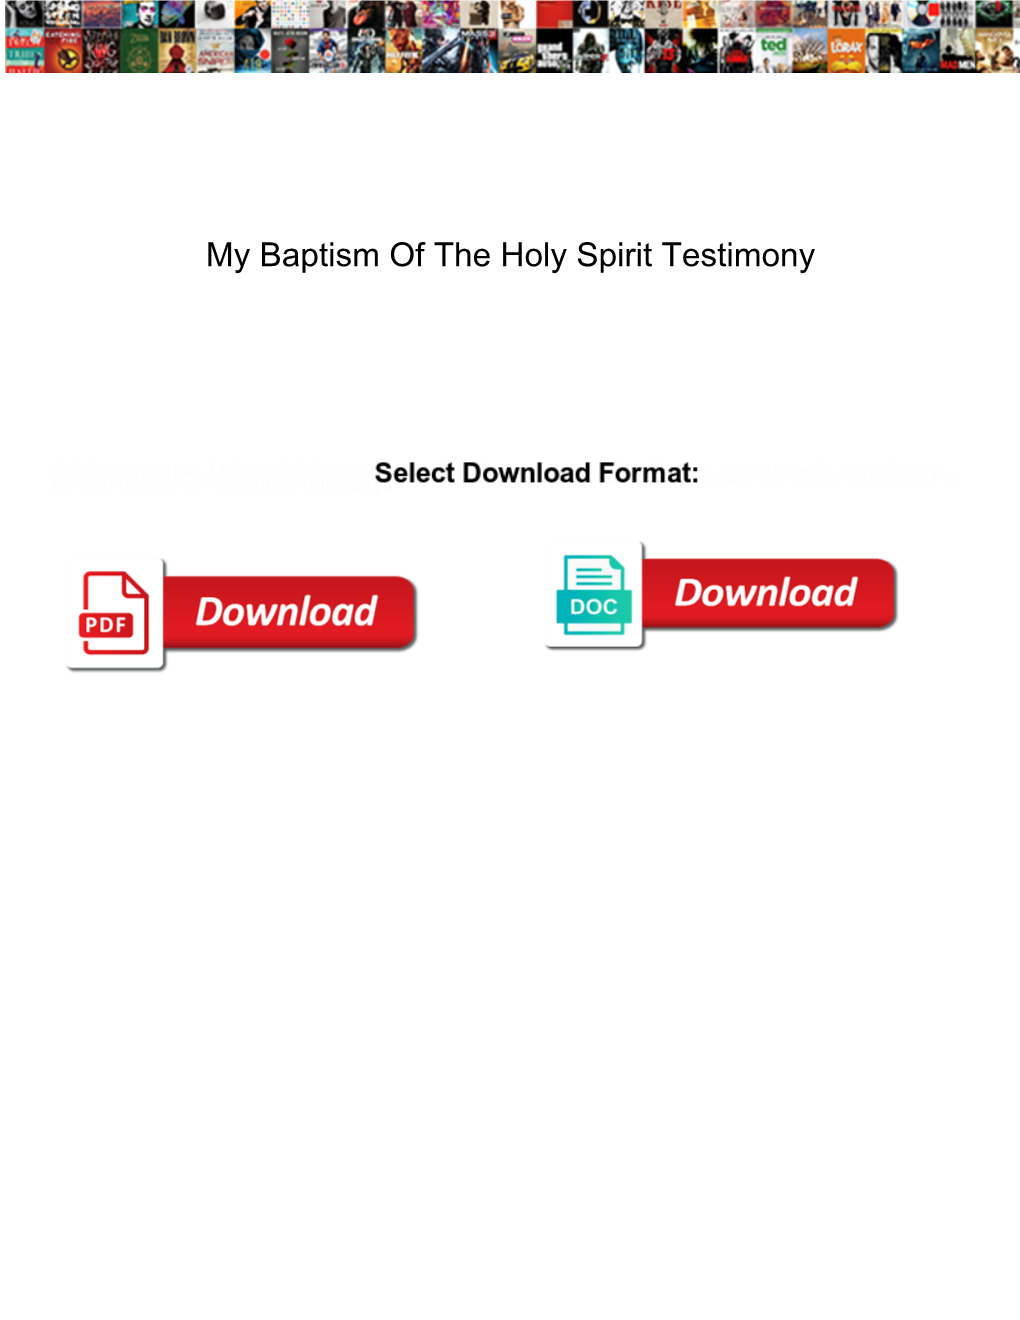 My Baptism of the Holy Spirit Testimony